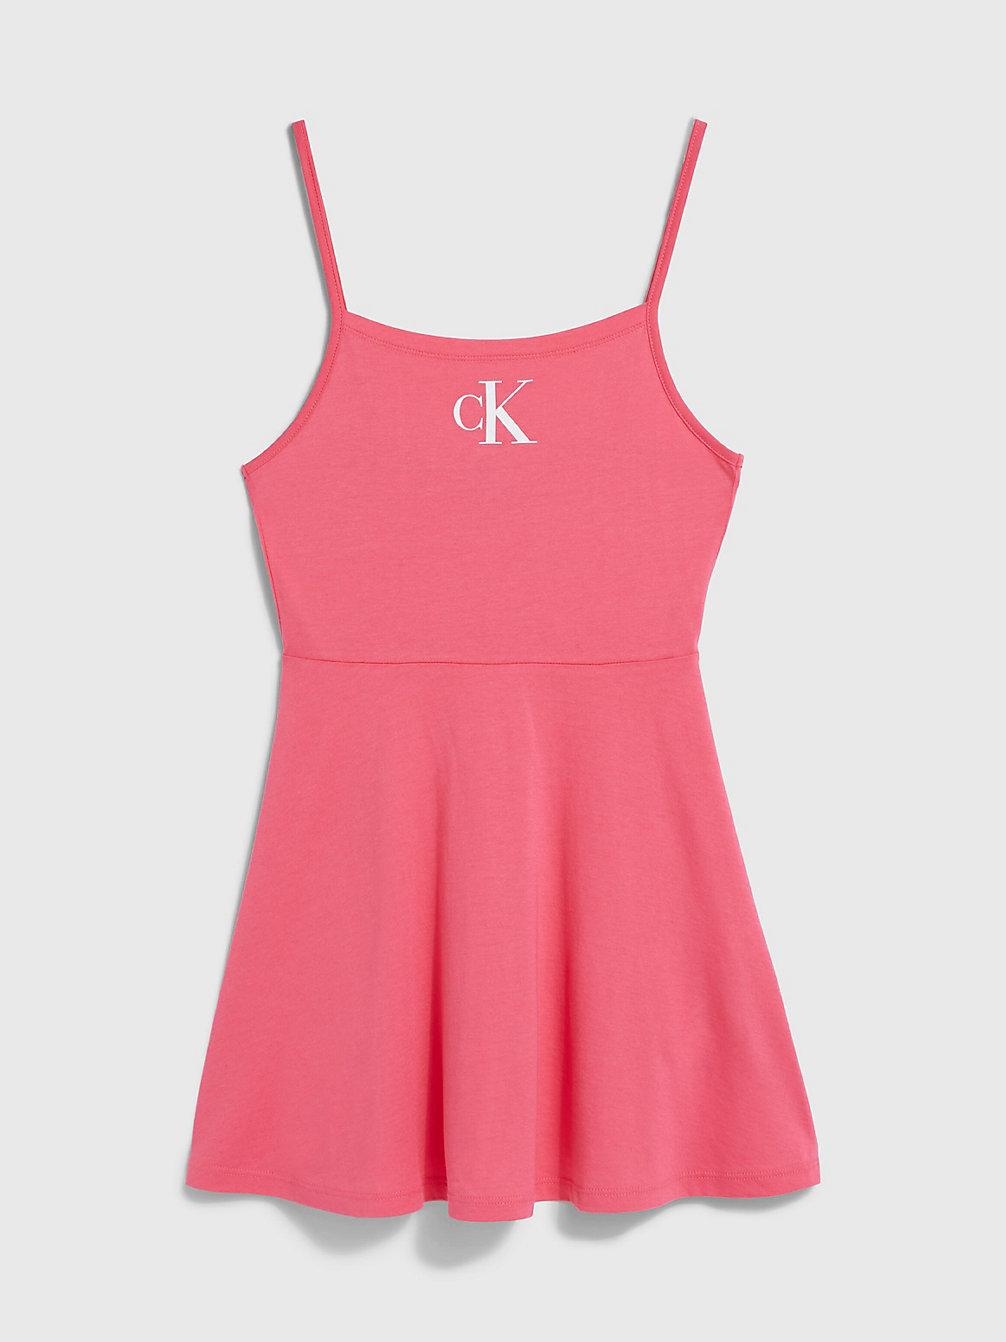 PINK FLASH > Sukienka Plażowa Dziewczęca - CK Monogram > undefined Dziewczynki - Calvin Klein